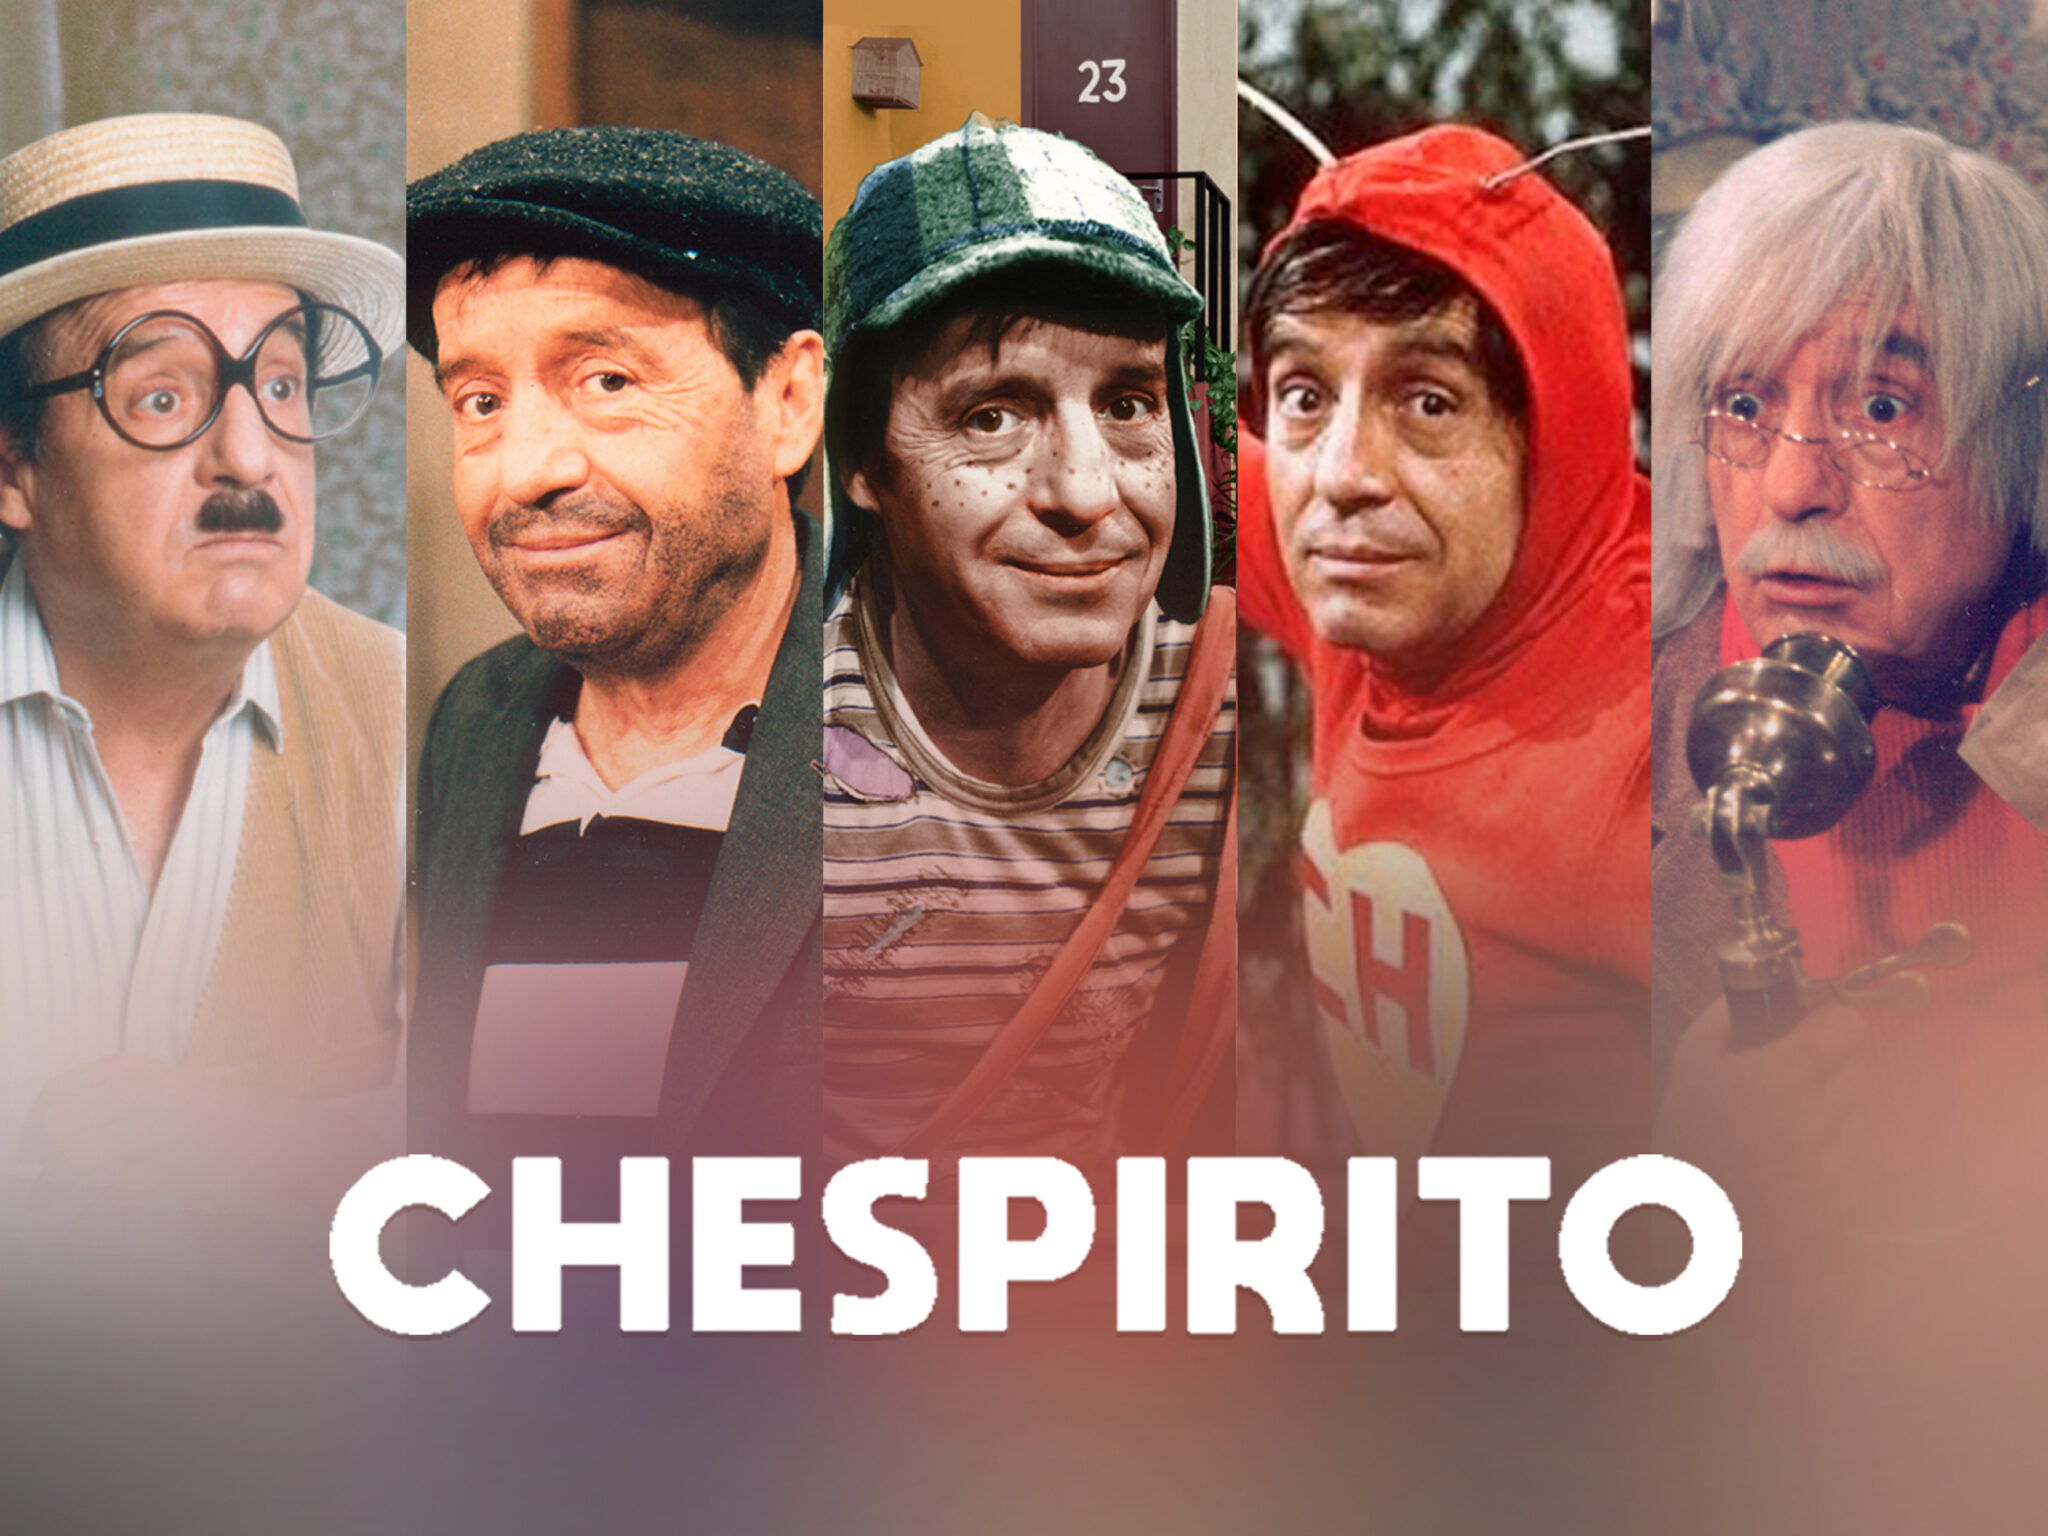 Conoce el origen detrás del seudónimo del famoso comediante «Chespirito»